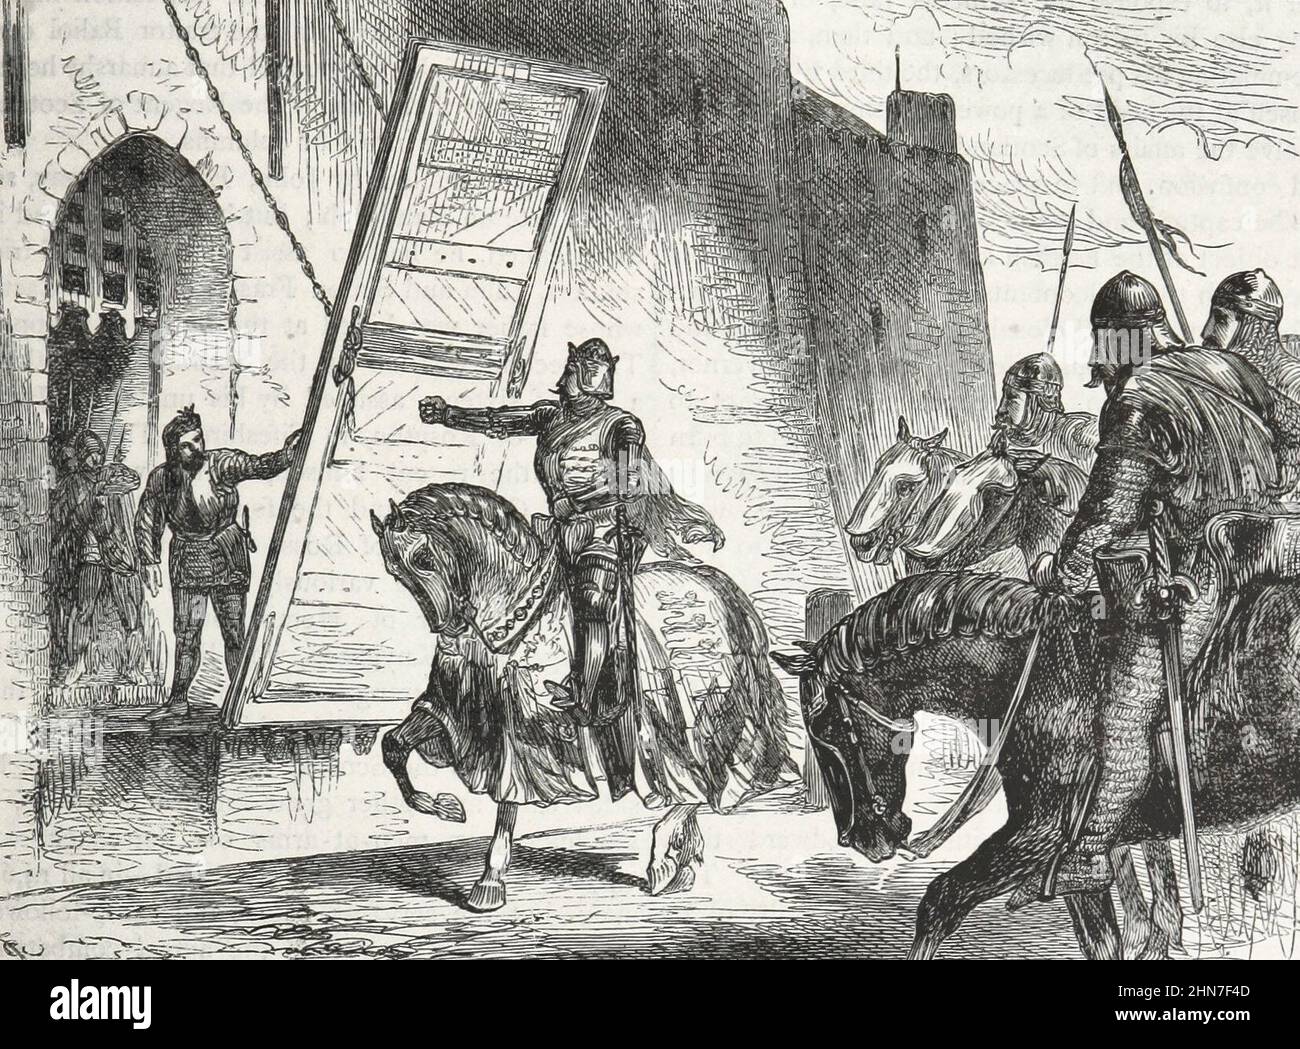 Dopo la battaglia di Banockburn, il re Edoardo i d'Inghilterra tentò di ritirarsi al castello di Stirling, ma il signore del castello onorò un accordo con lo scozzese e rifiutò di farlo entrare. Foto Stock